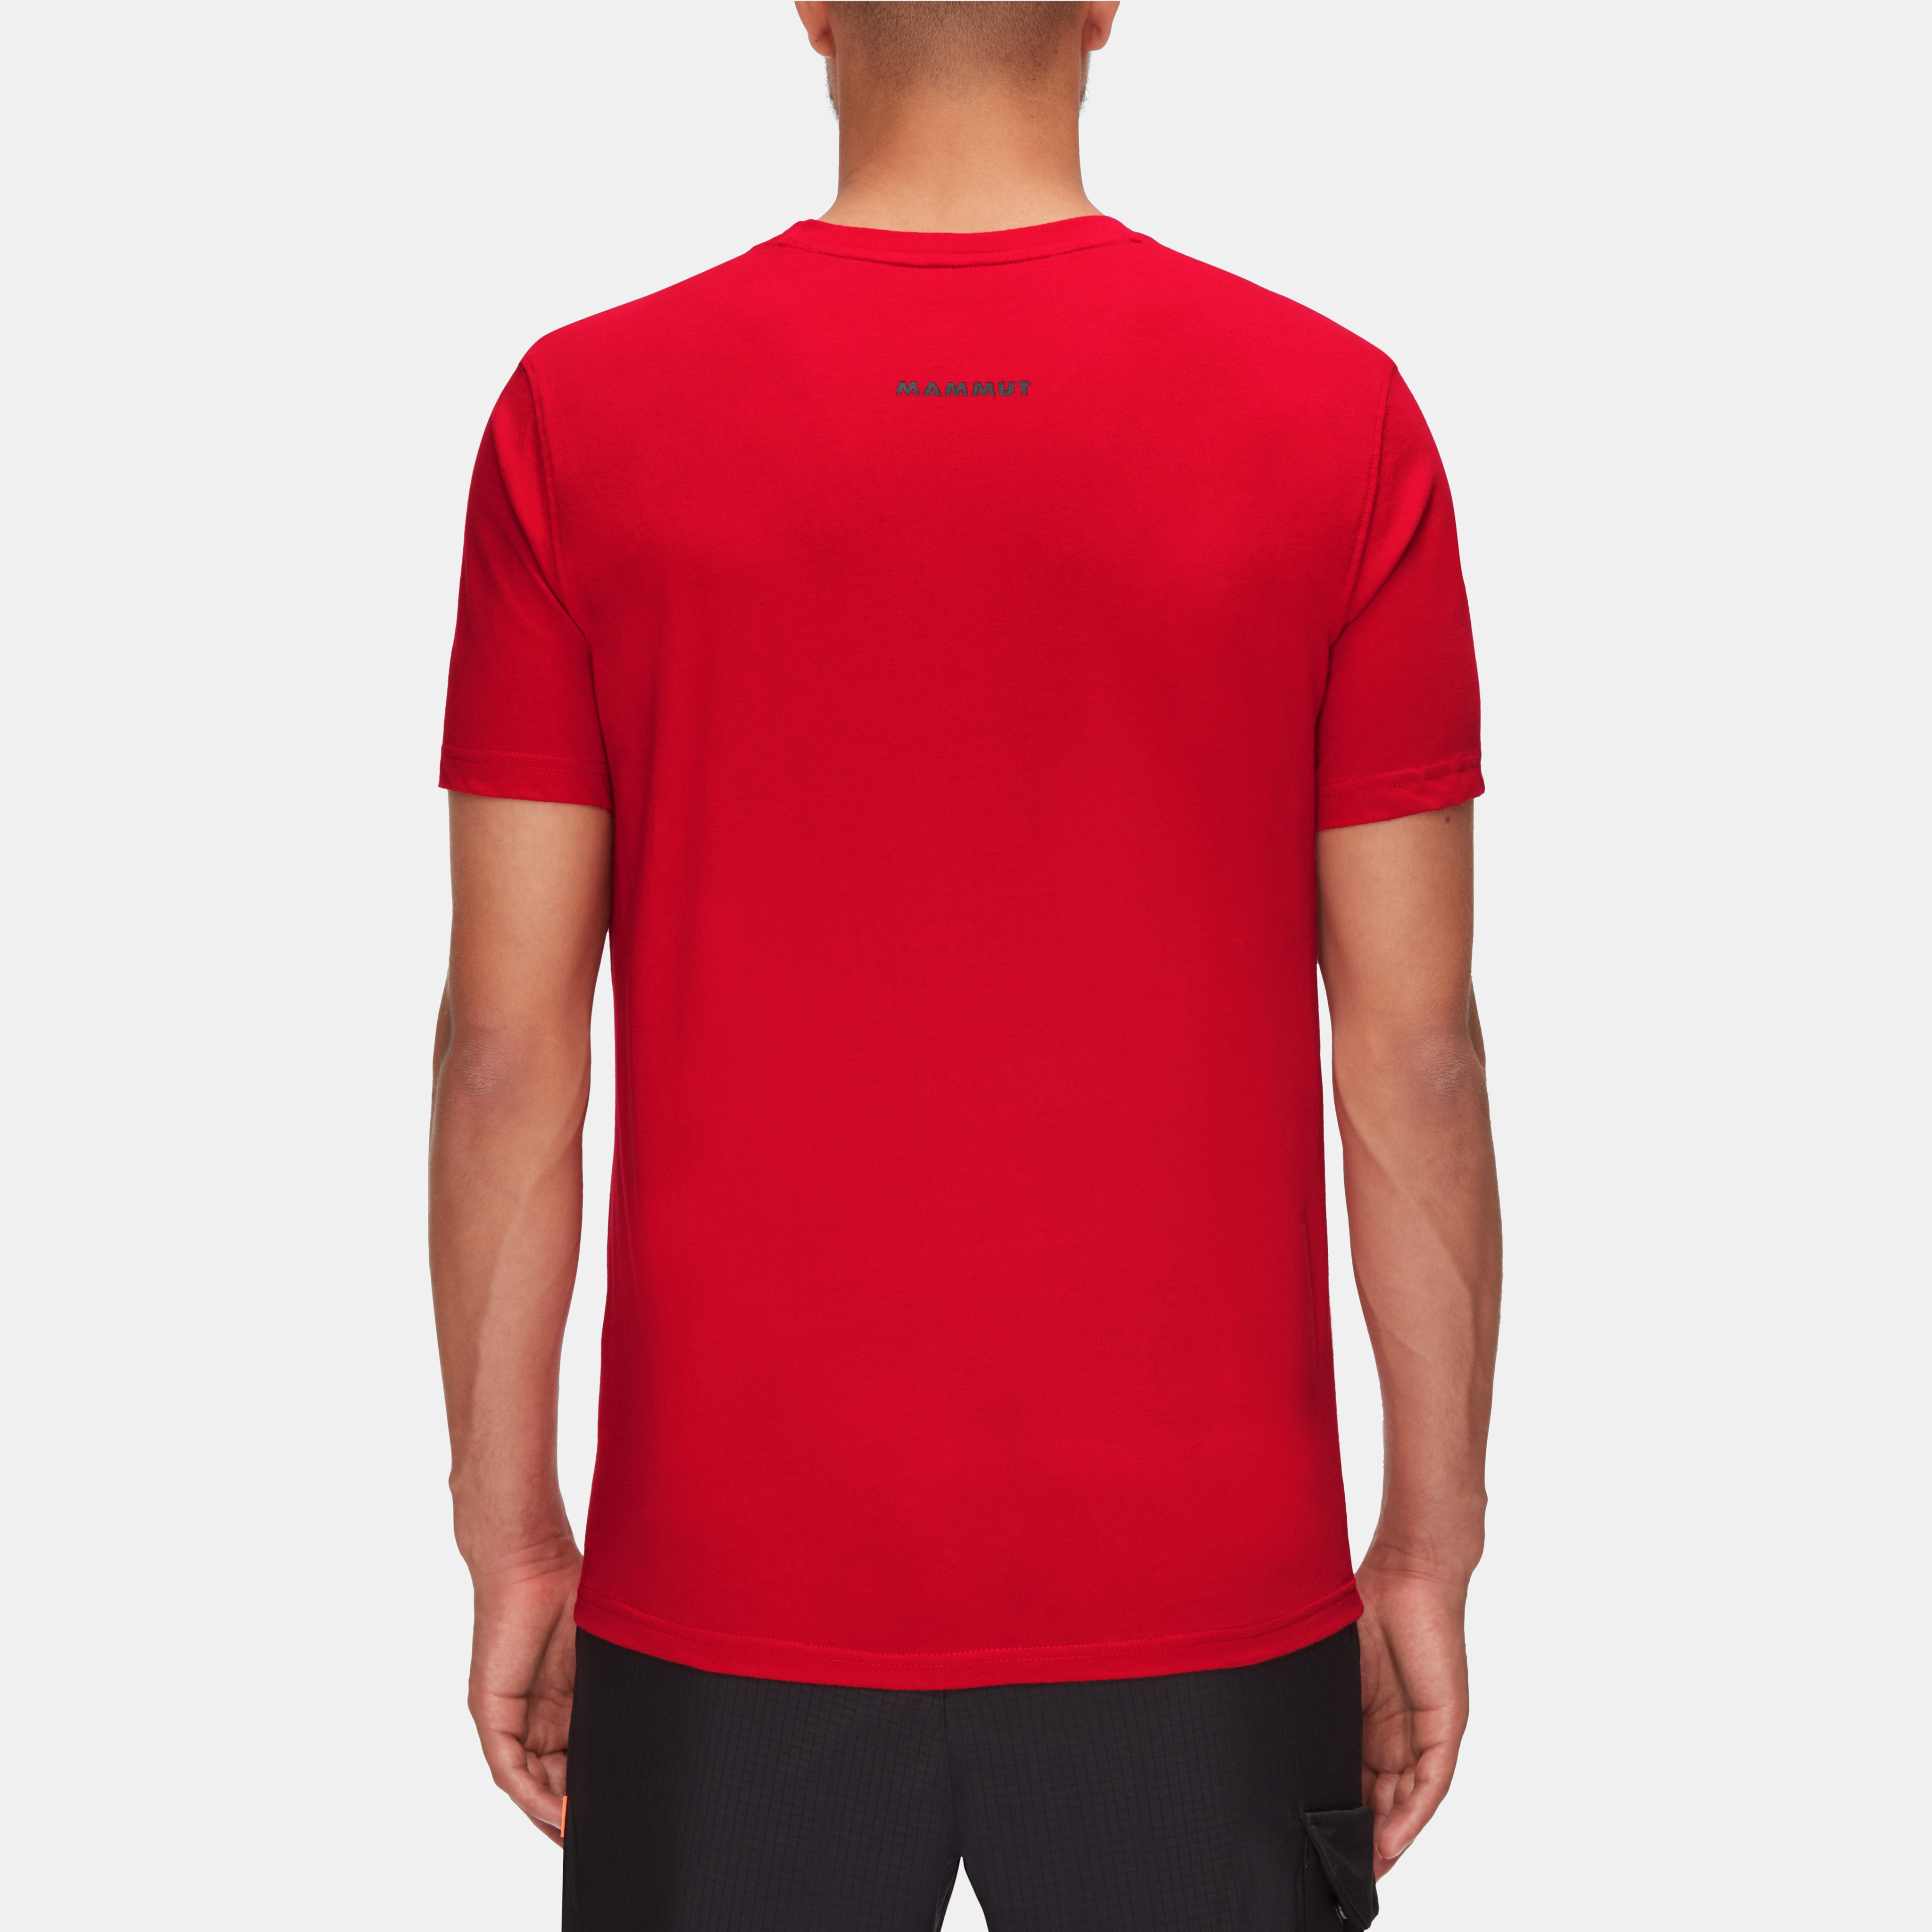 Seile T-Shirt Men product image